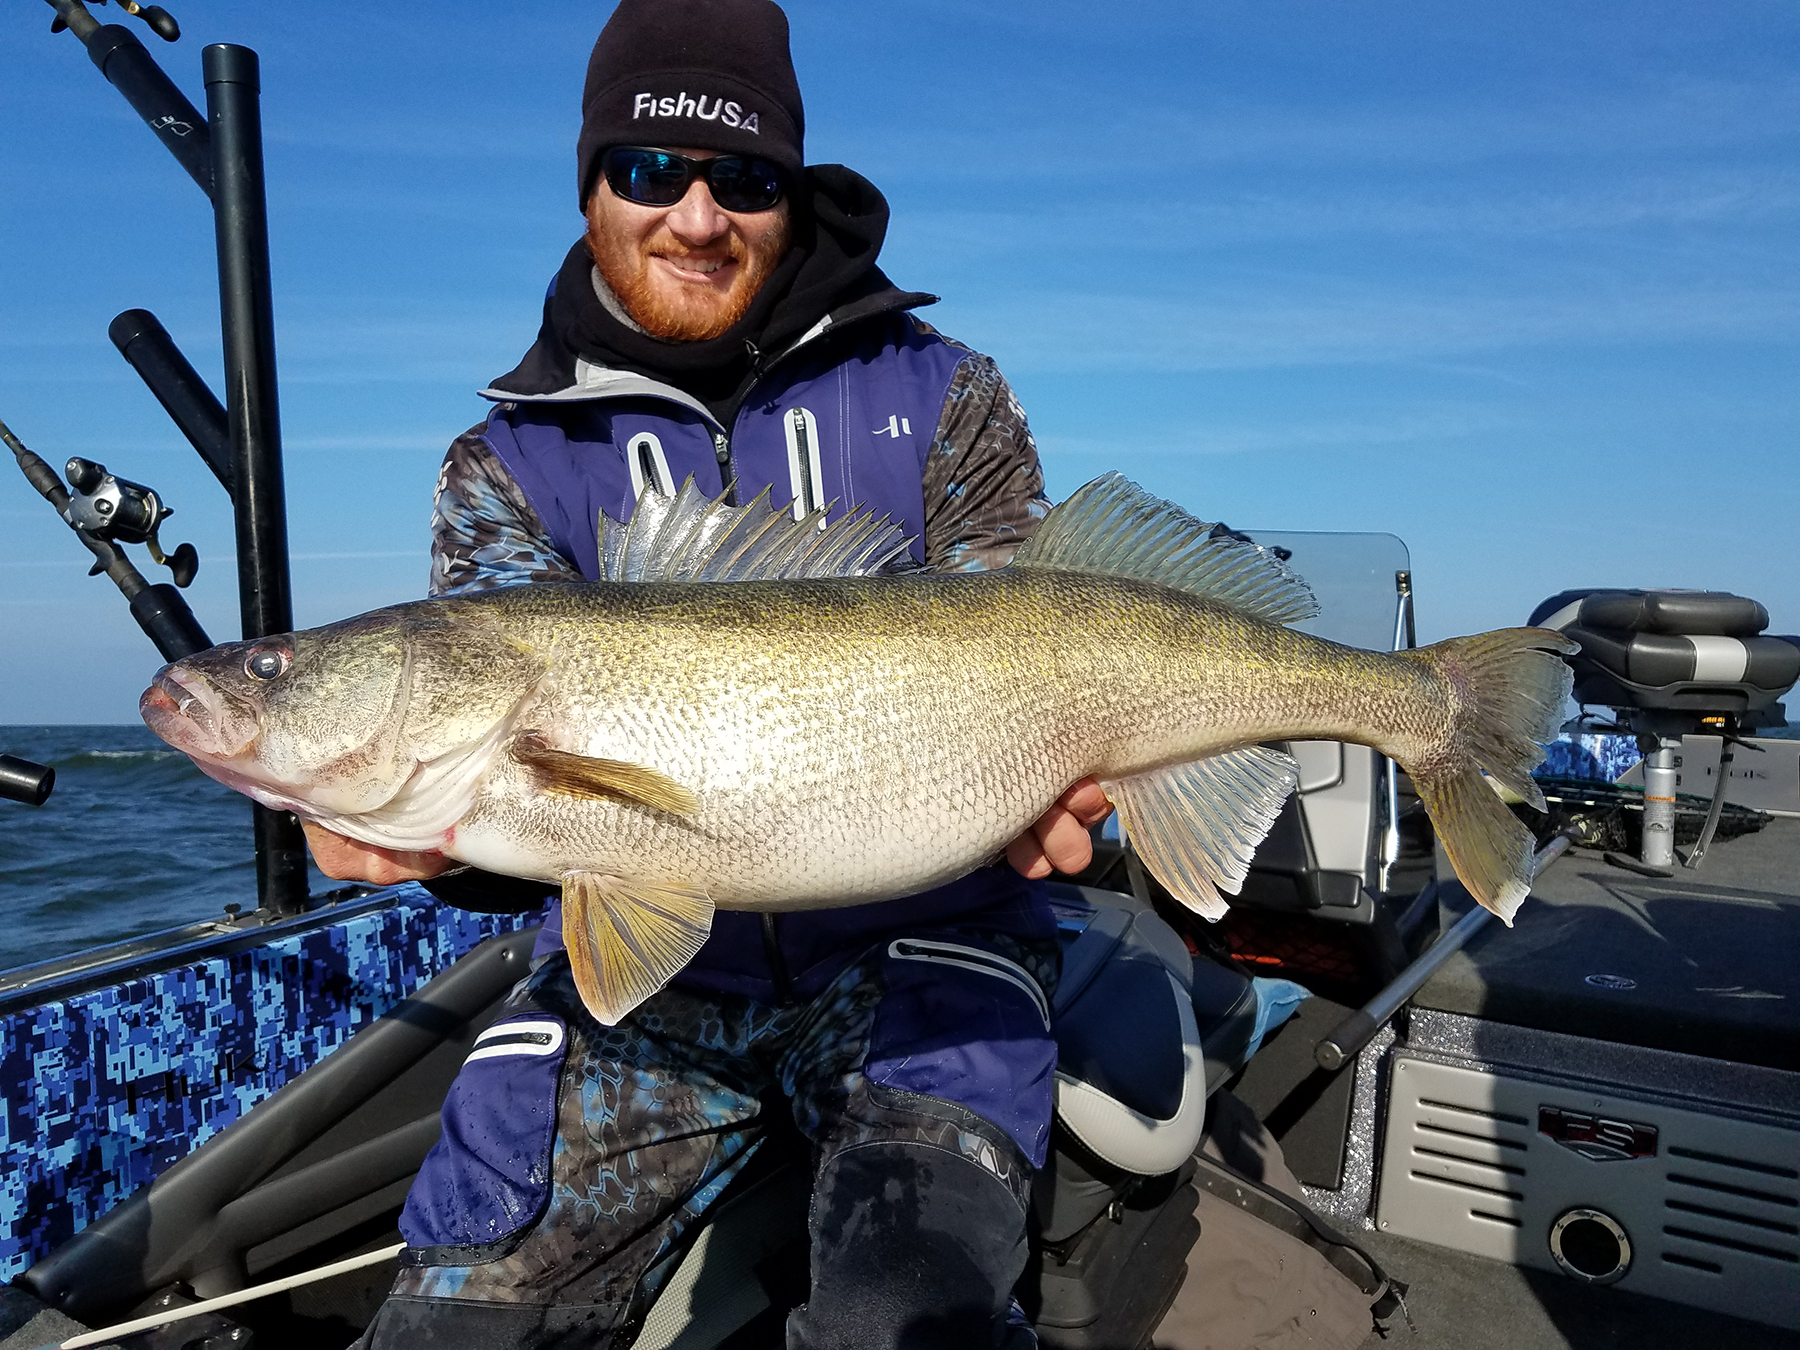 Minnesota-based walleye angler Sam Anderson